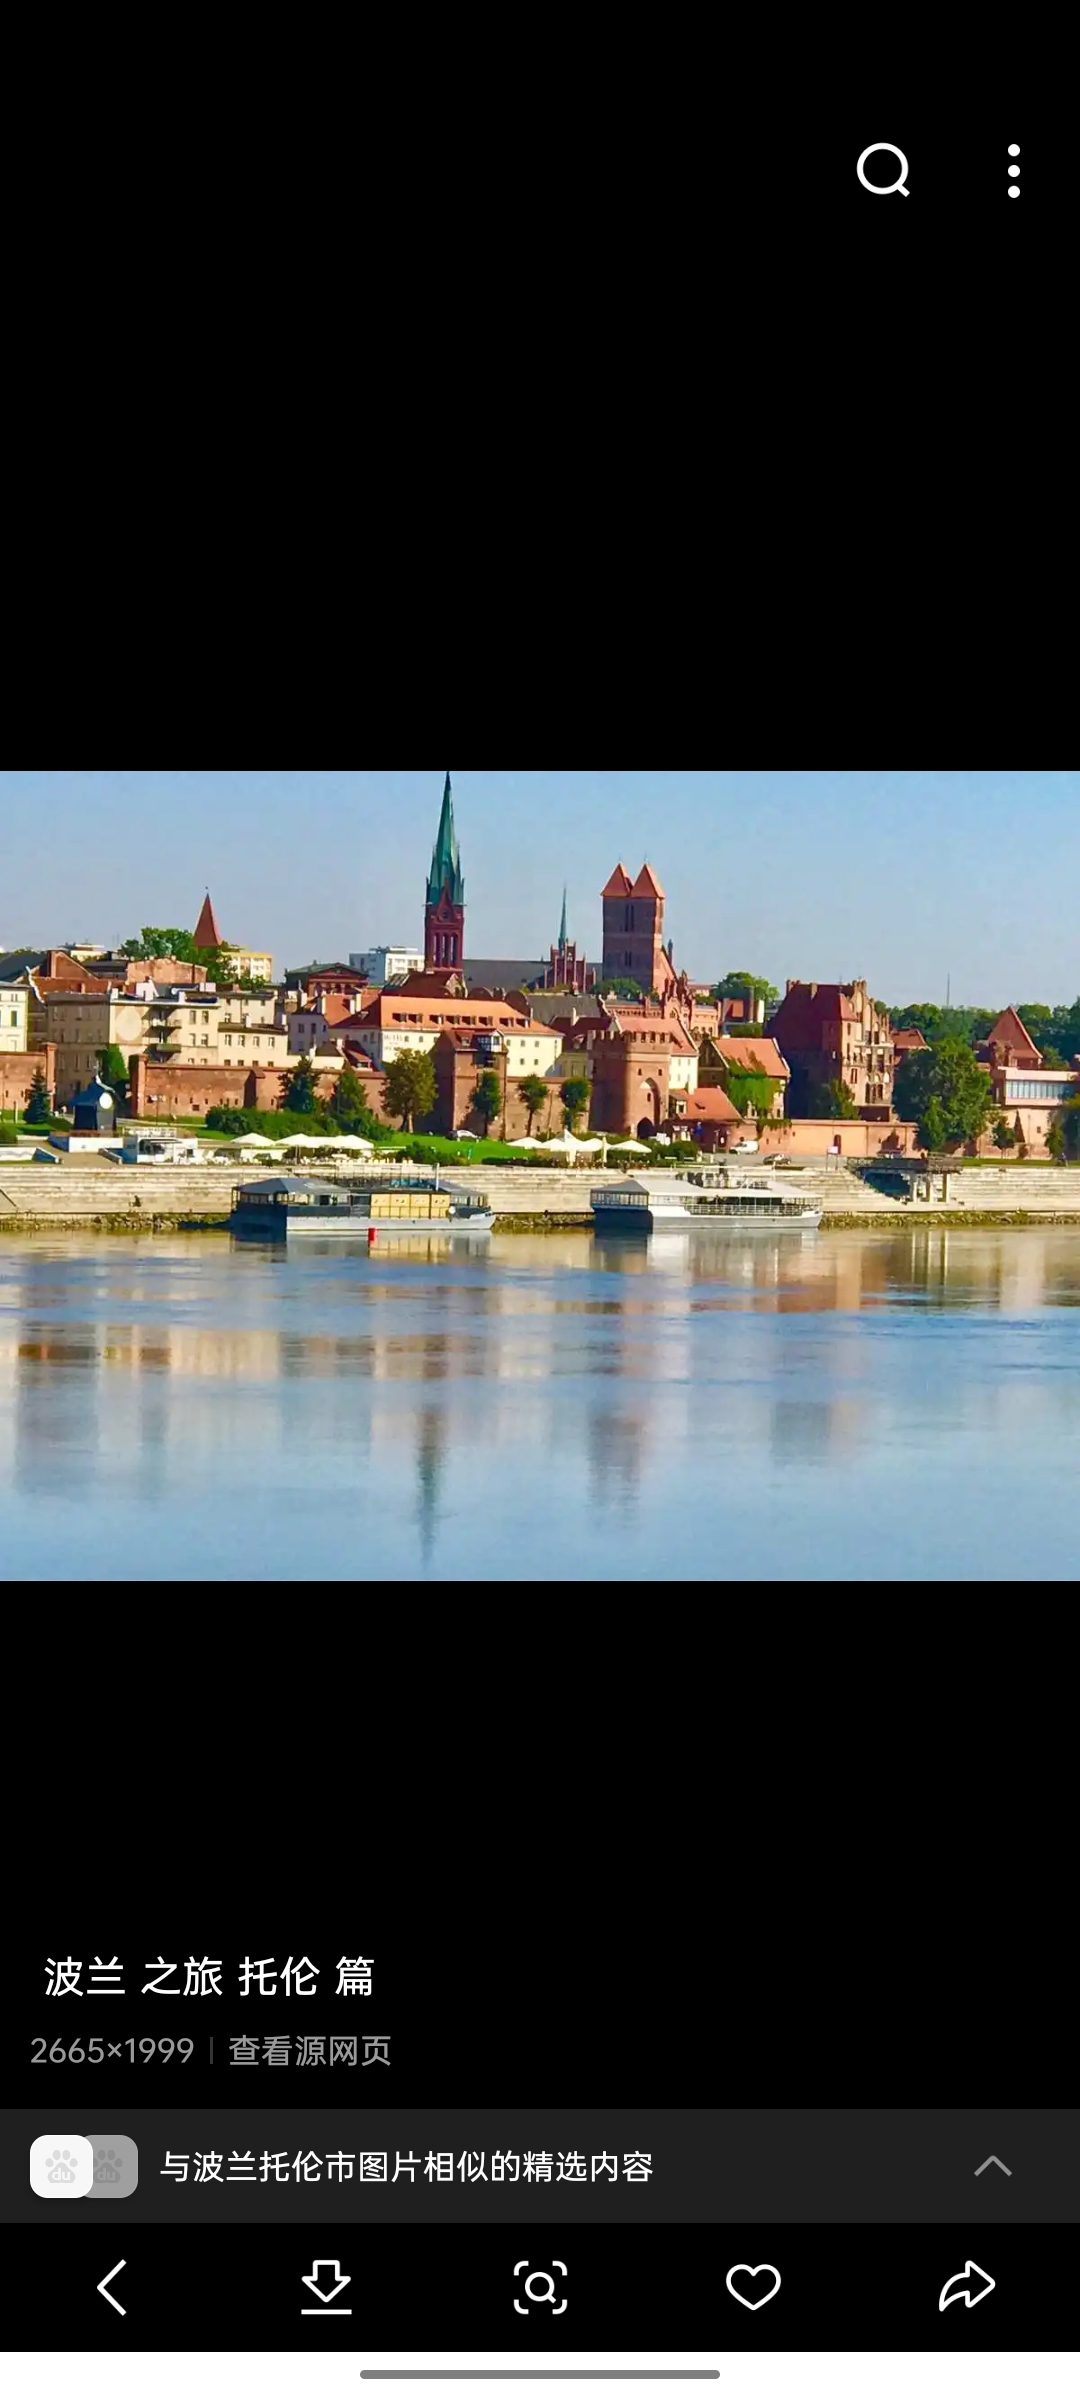 托伦市位于波兰中北部维斯瓦河畔，为库亚维-波美拉尼亚省两首府之一，距华沙190公里。面积115平方公